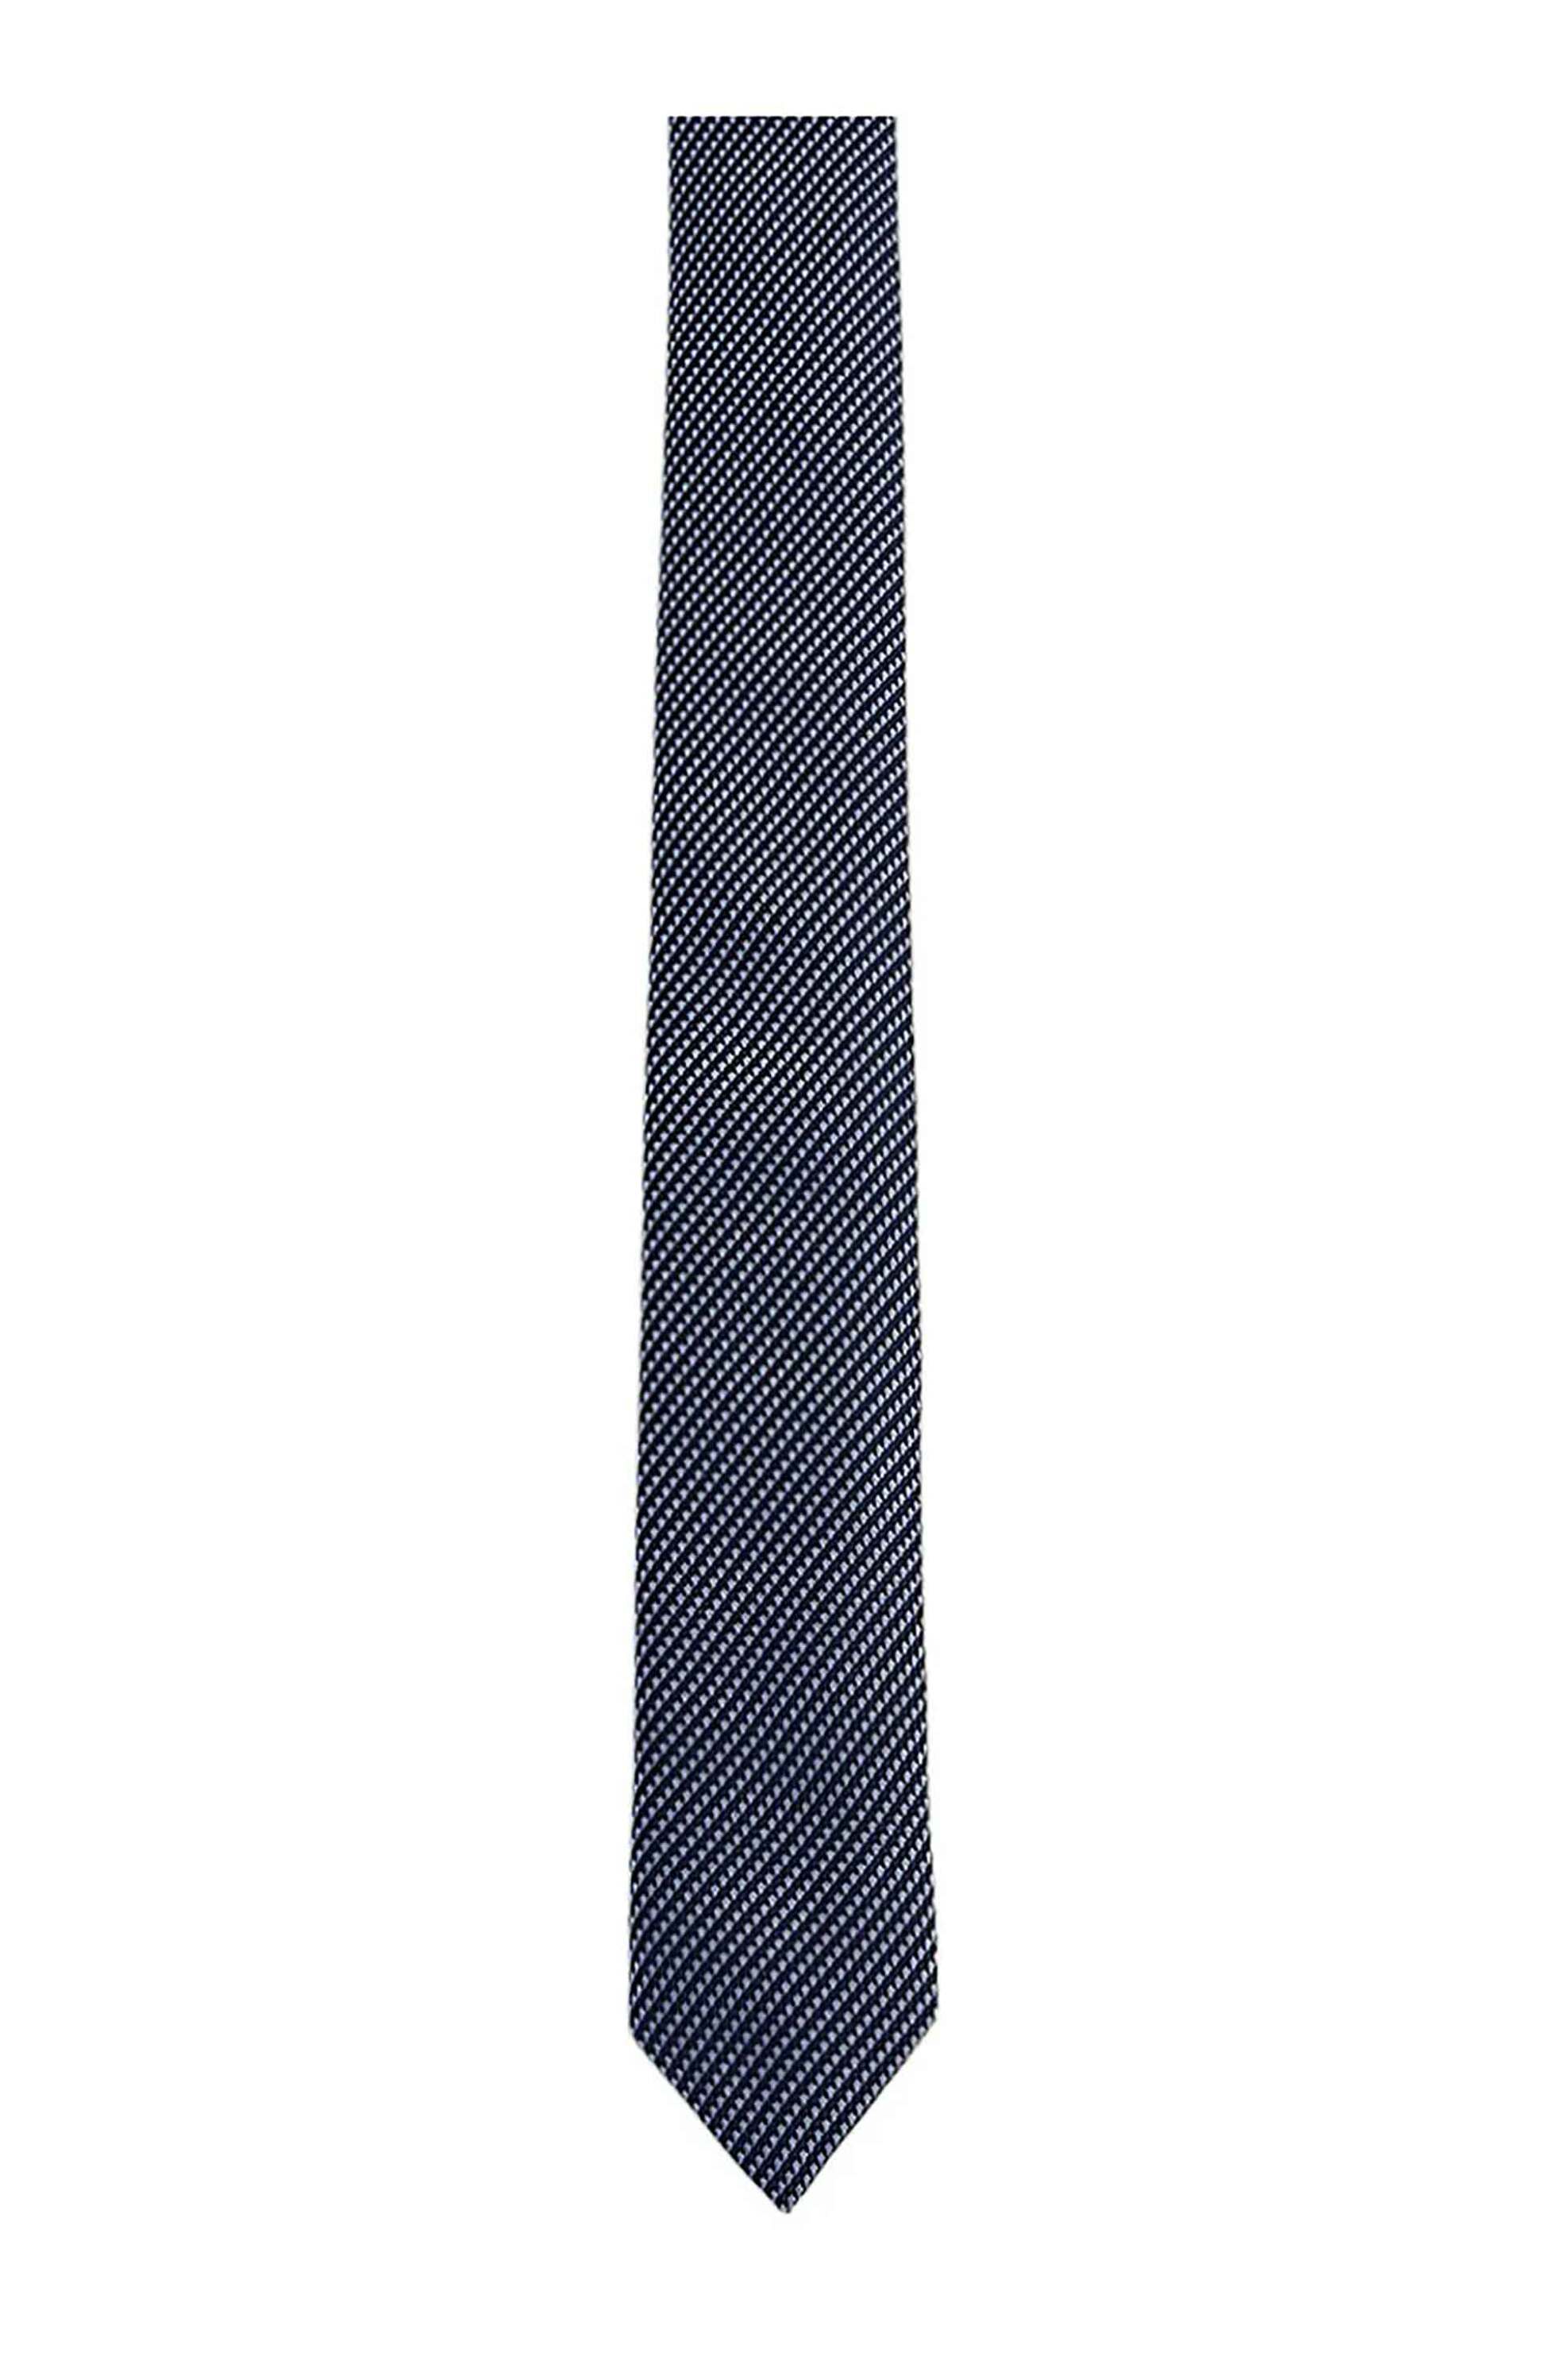 Ανδρική Μόδα > Ανδρικά Αξεσουάρ > Ανδρικές Γραβάτες & Παπιγιόν Hugo Boss ανδρική μεταξωτή γραβάτα με μικροσχέδιο - 50509007 Μπλε Σκούρο